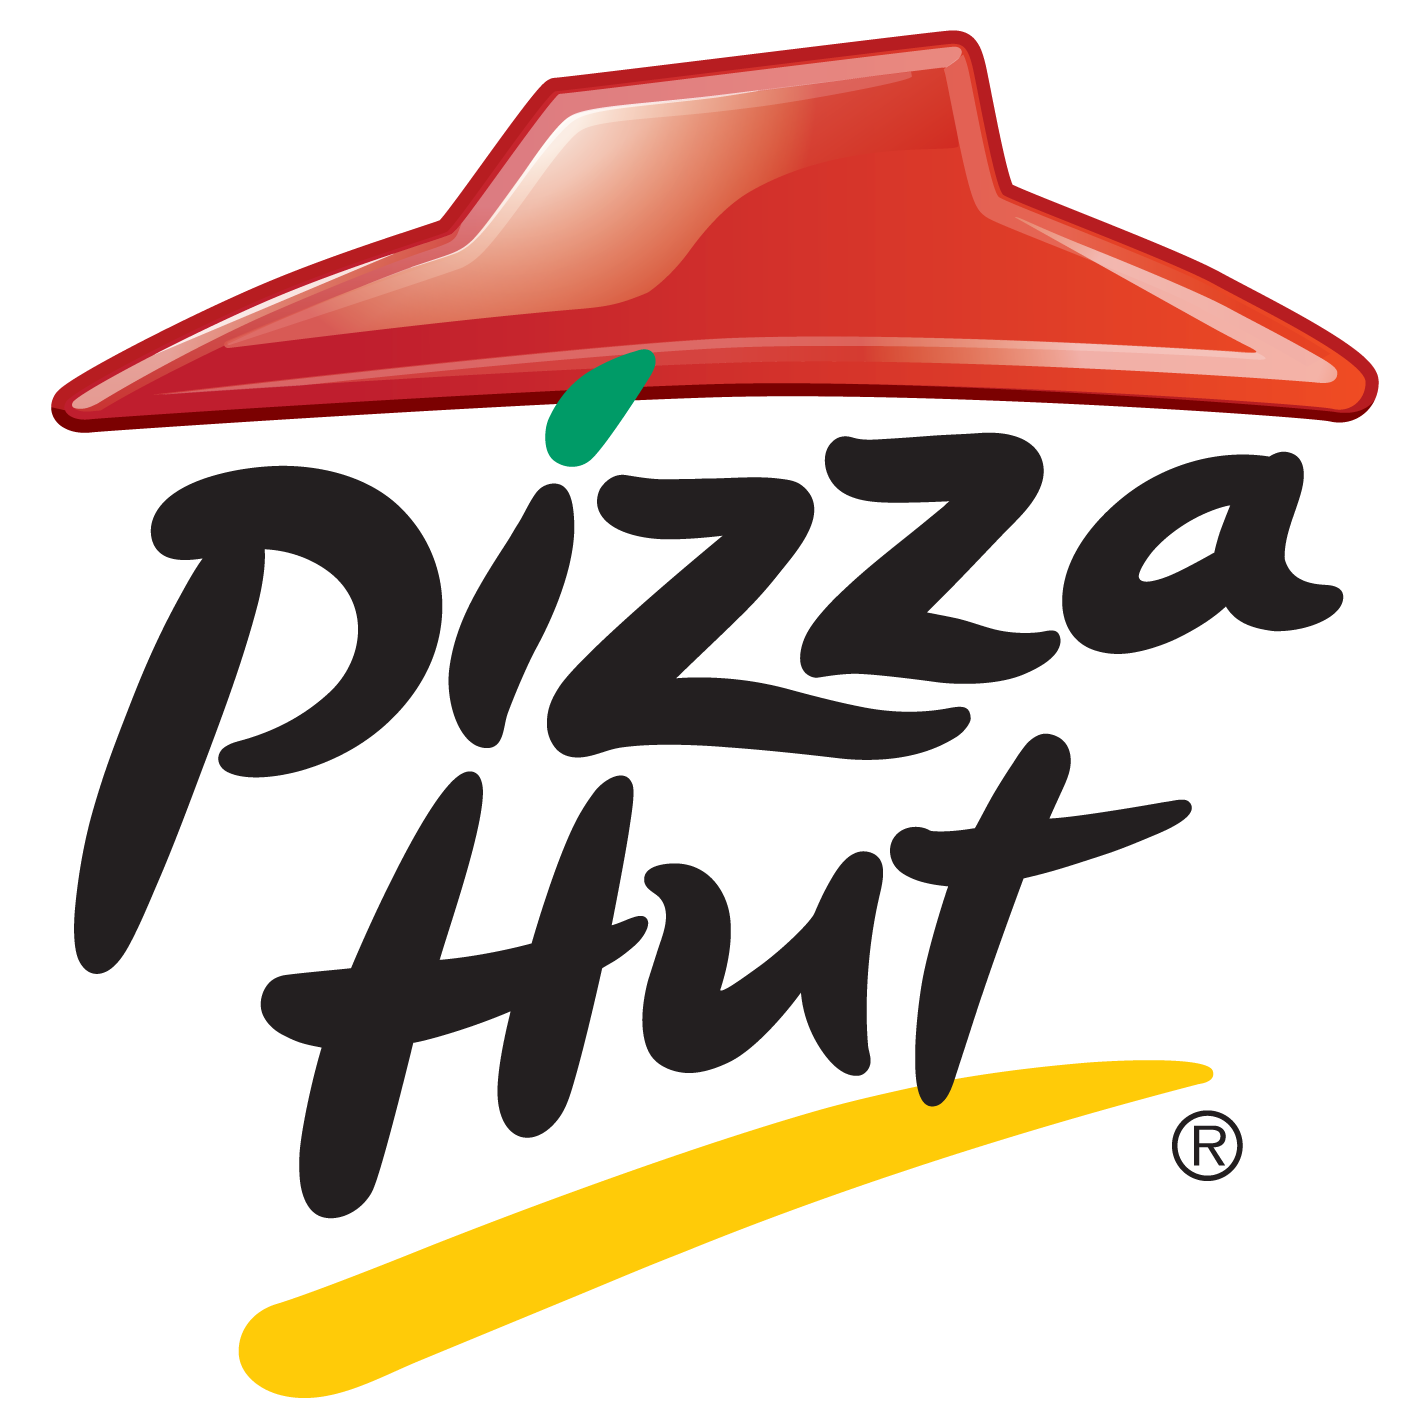 History of All Logos: All Pizza Hut Logos